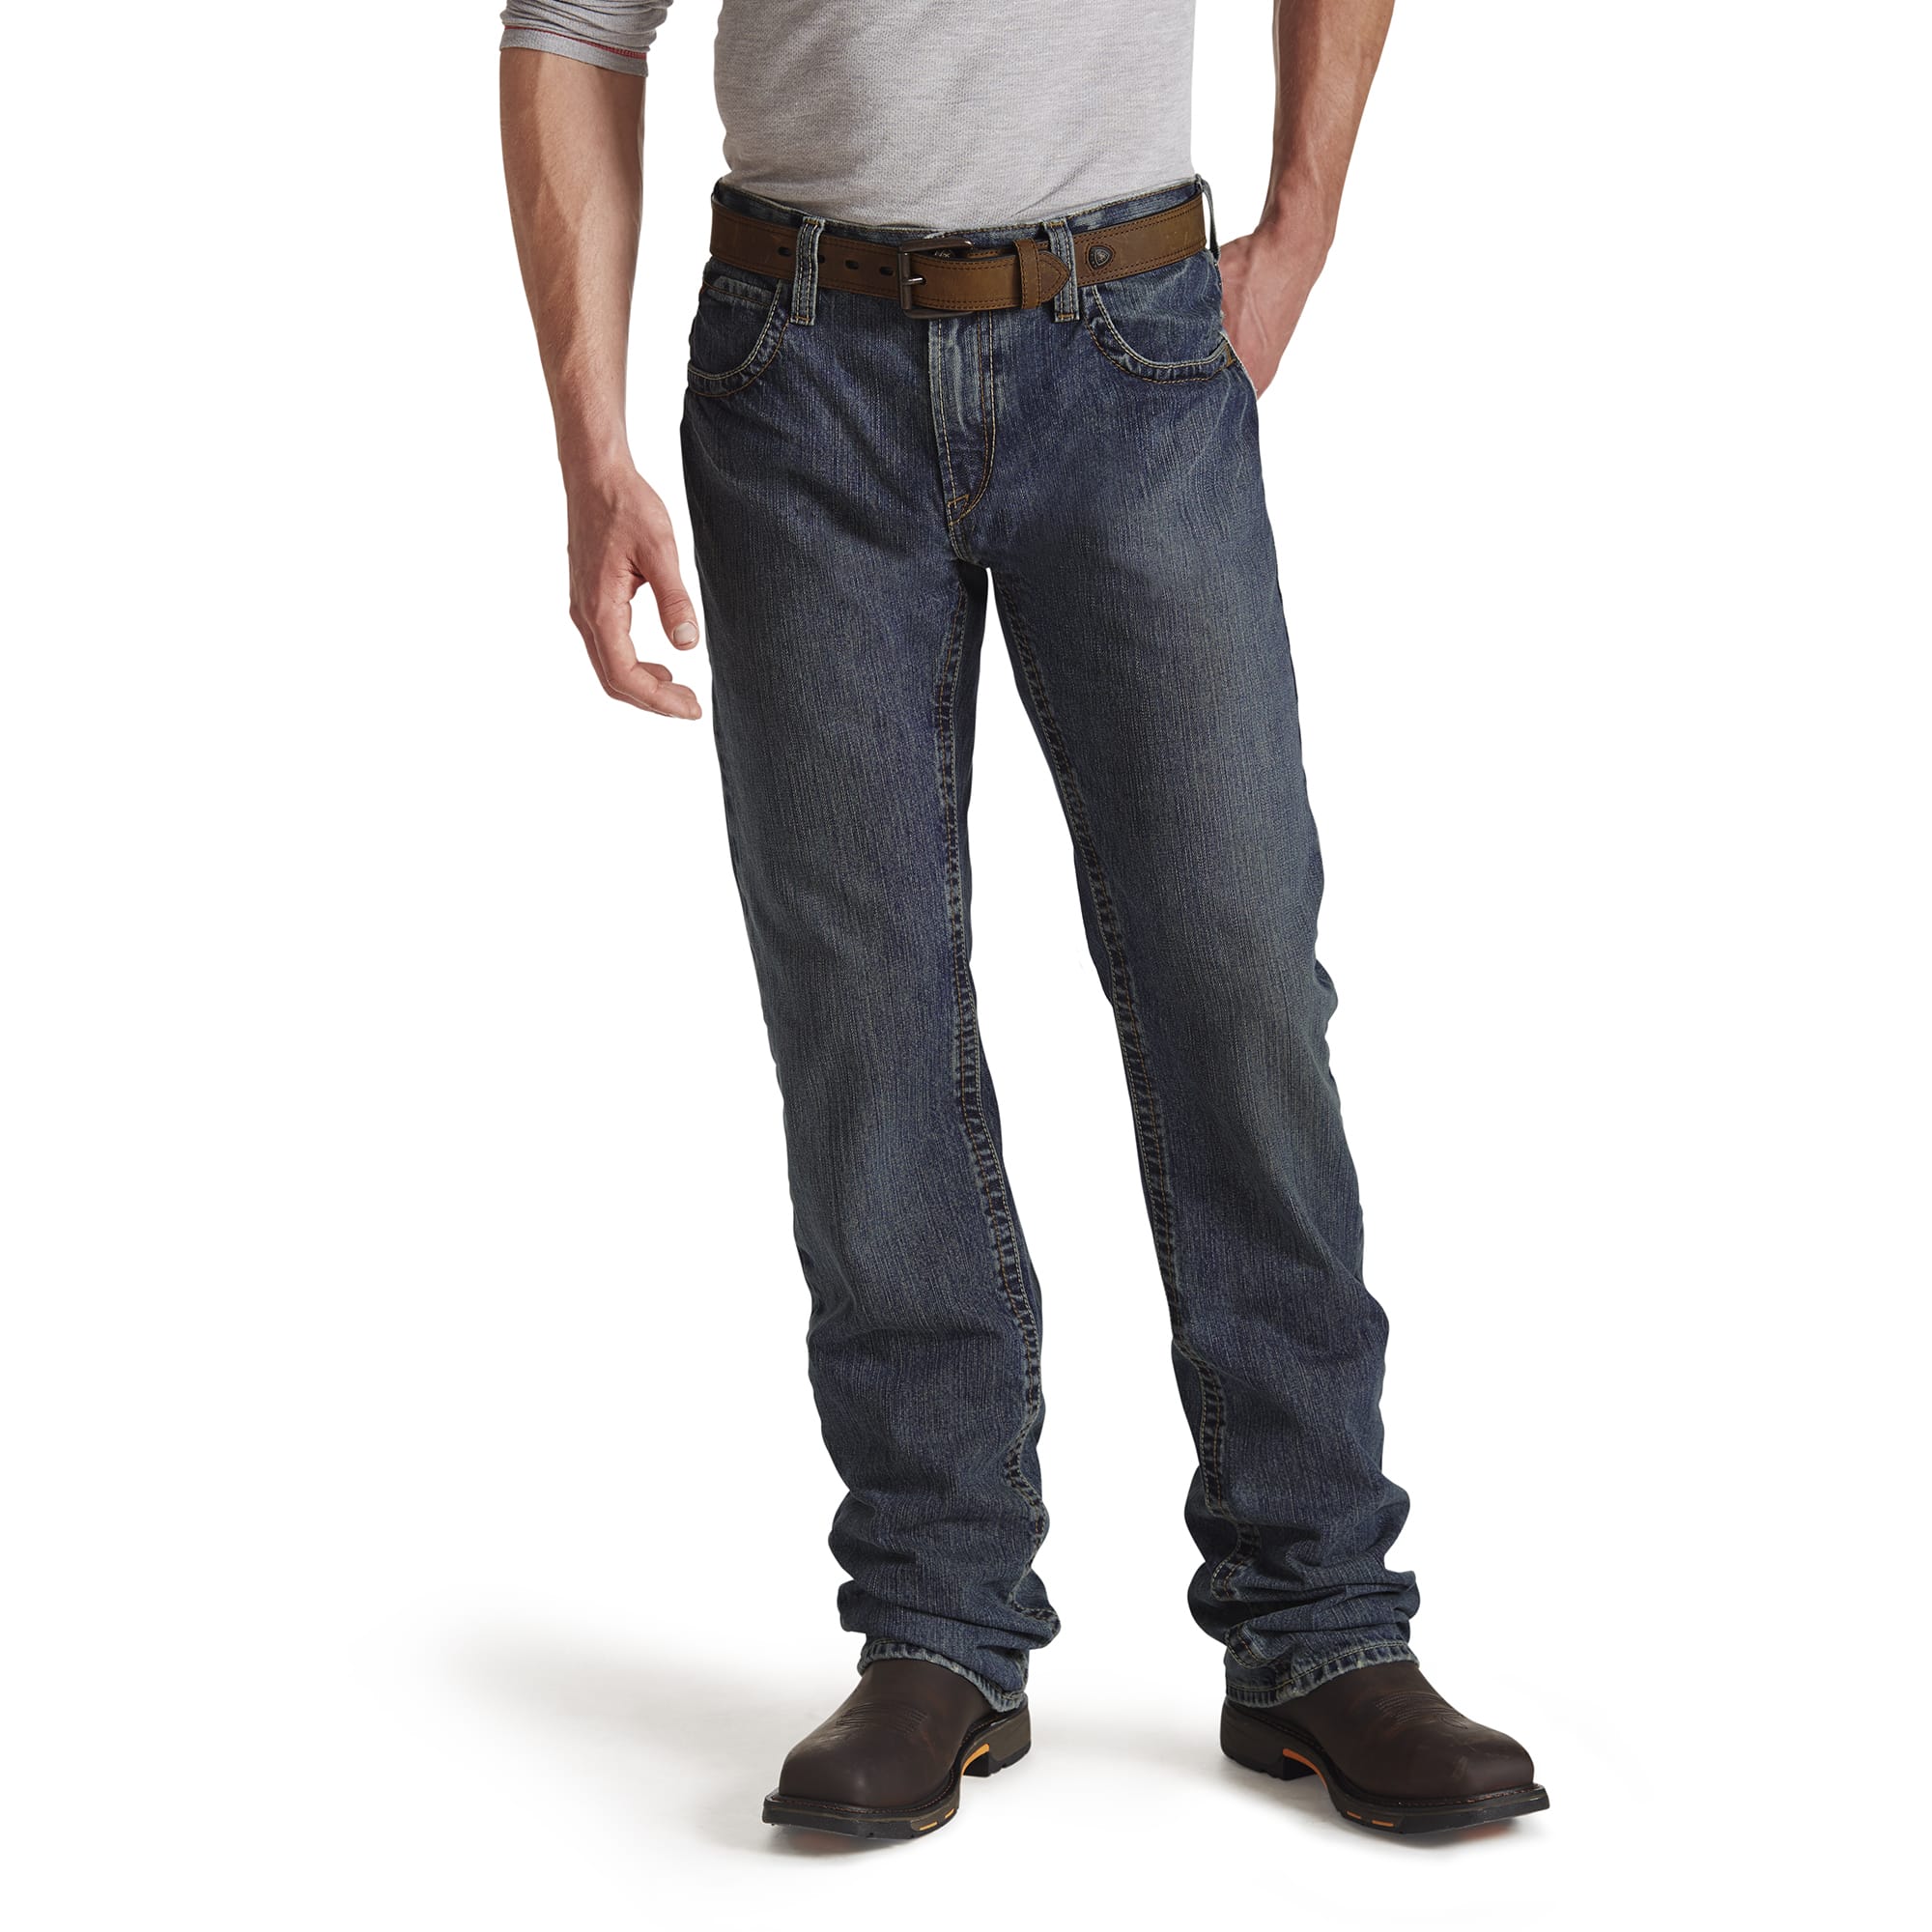 ariat men's slim fit jeans